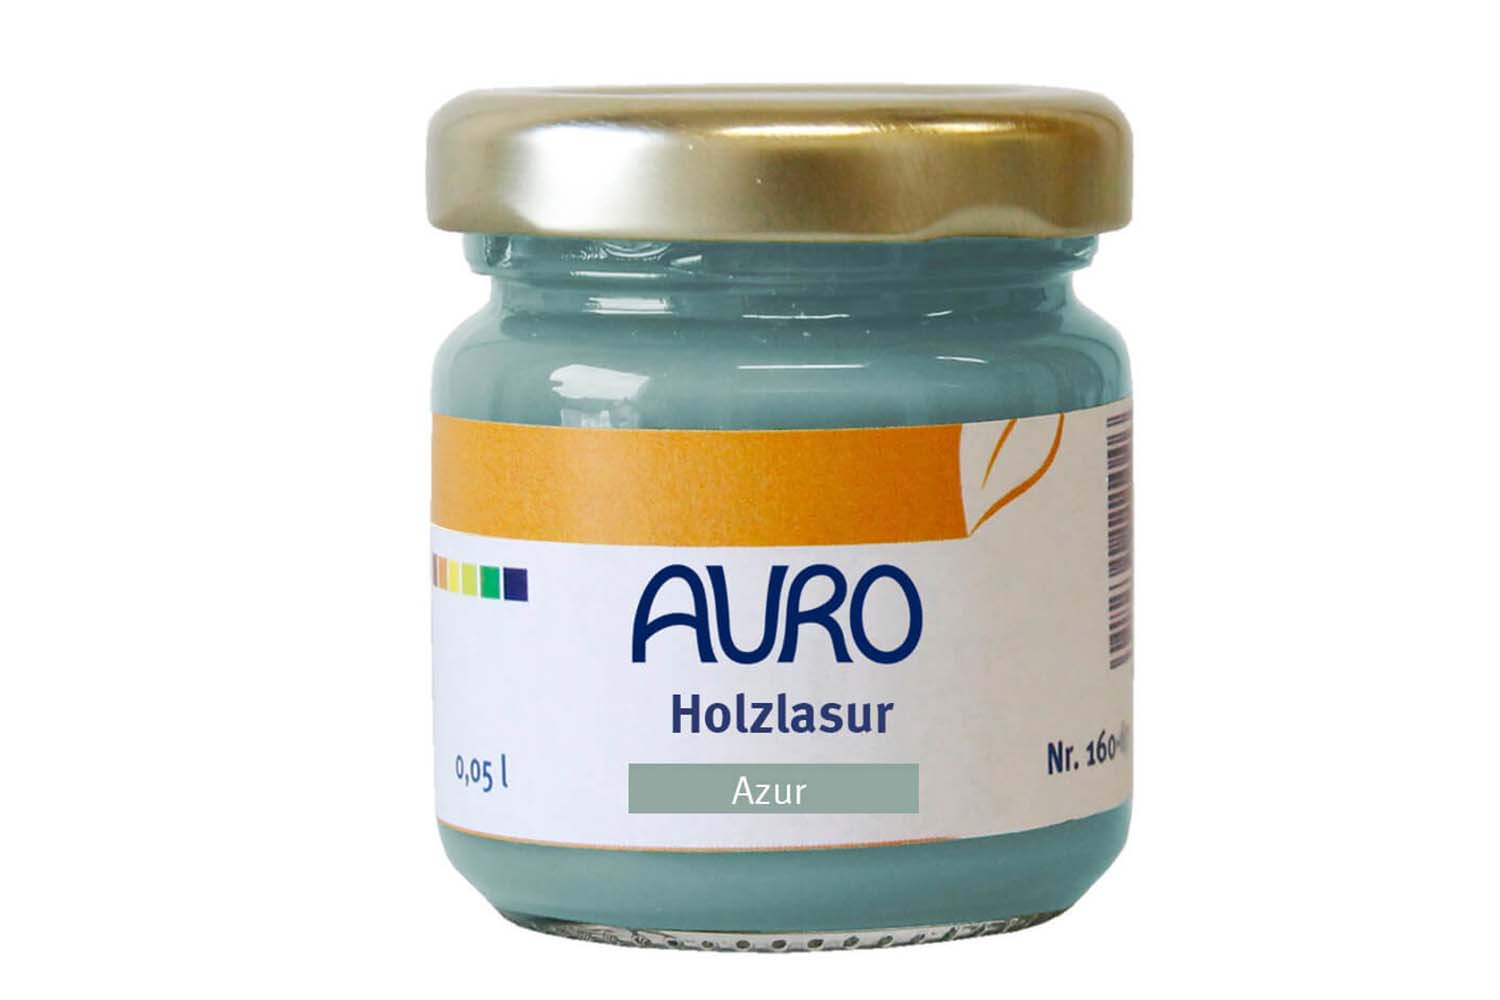 Auro Holzlasur Aqua Nr. 160 - Azur